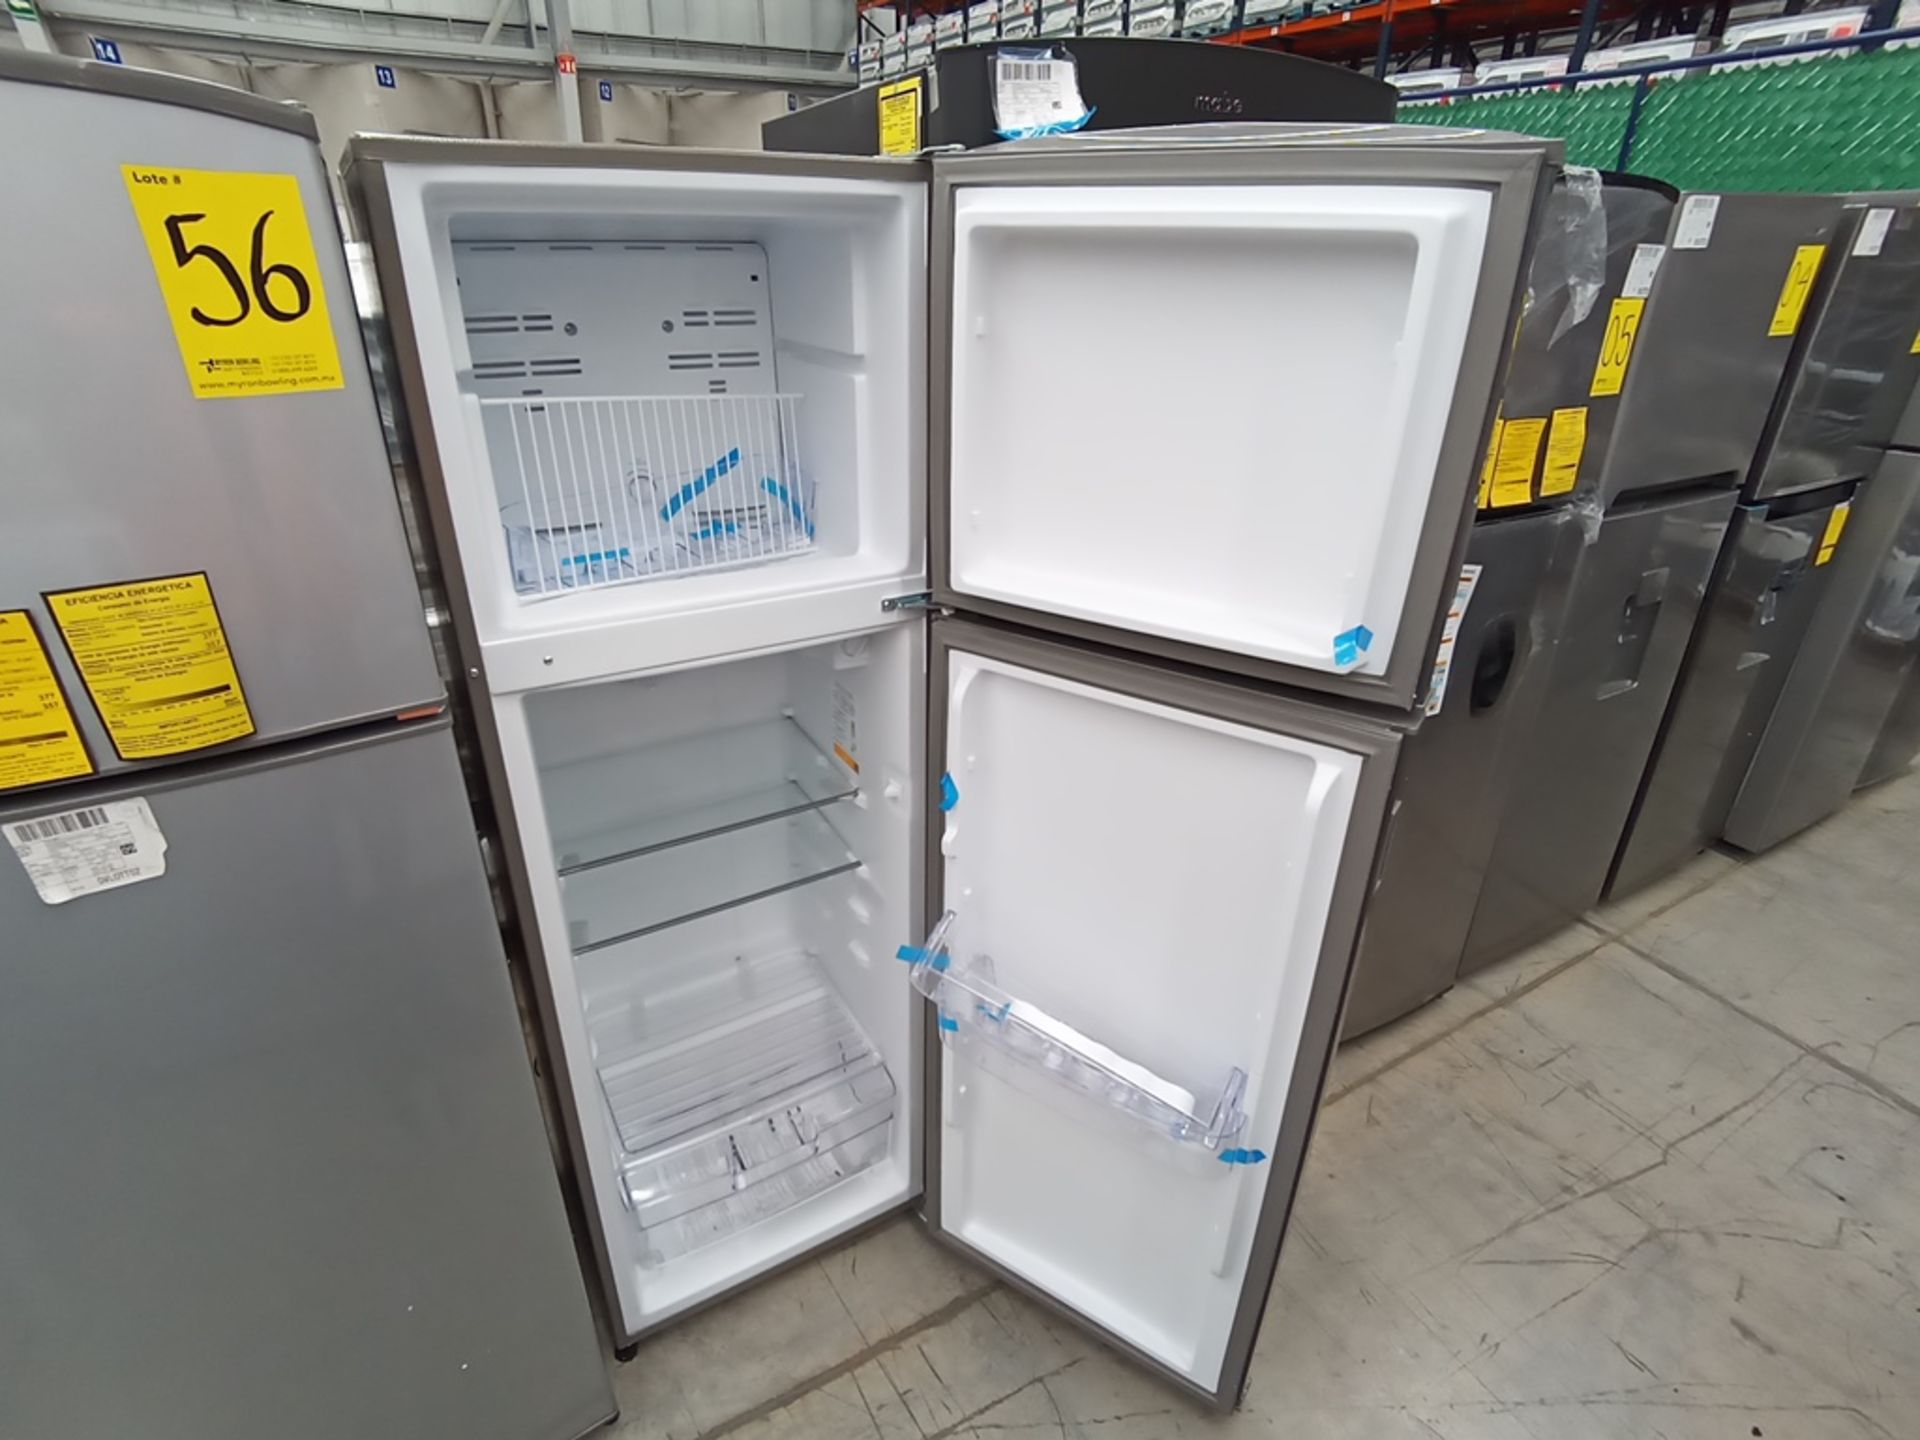 1 Refrigerador Marca Acros, Modelo AT091FG, Serie VRA3383587, Color Gris con Estampado. Golpeado. F - Image 7 of 30